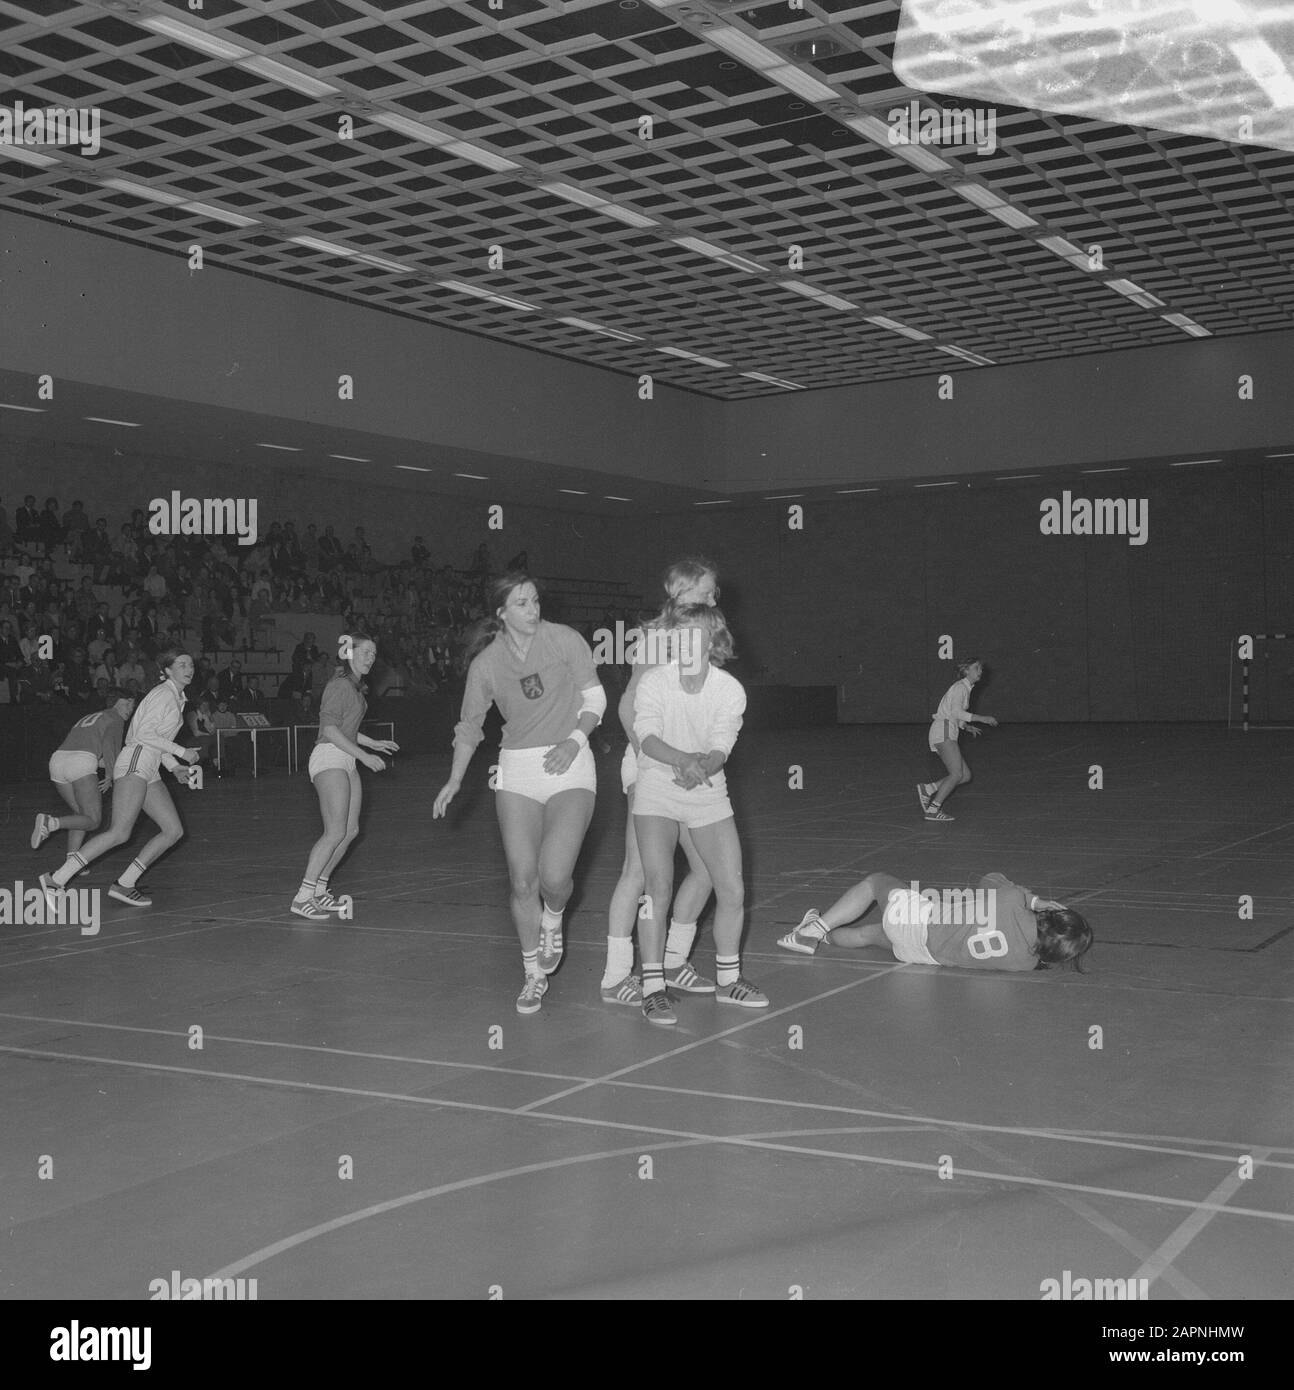 Handball au danemark Banque d'images noir et blanc - Alamy